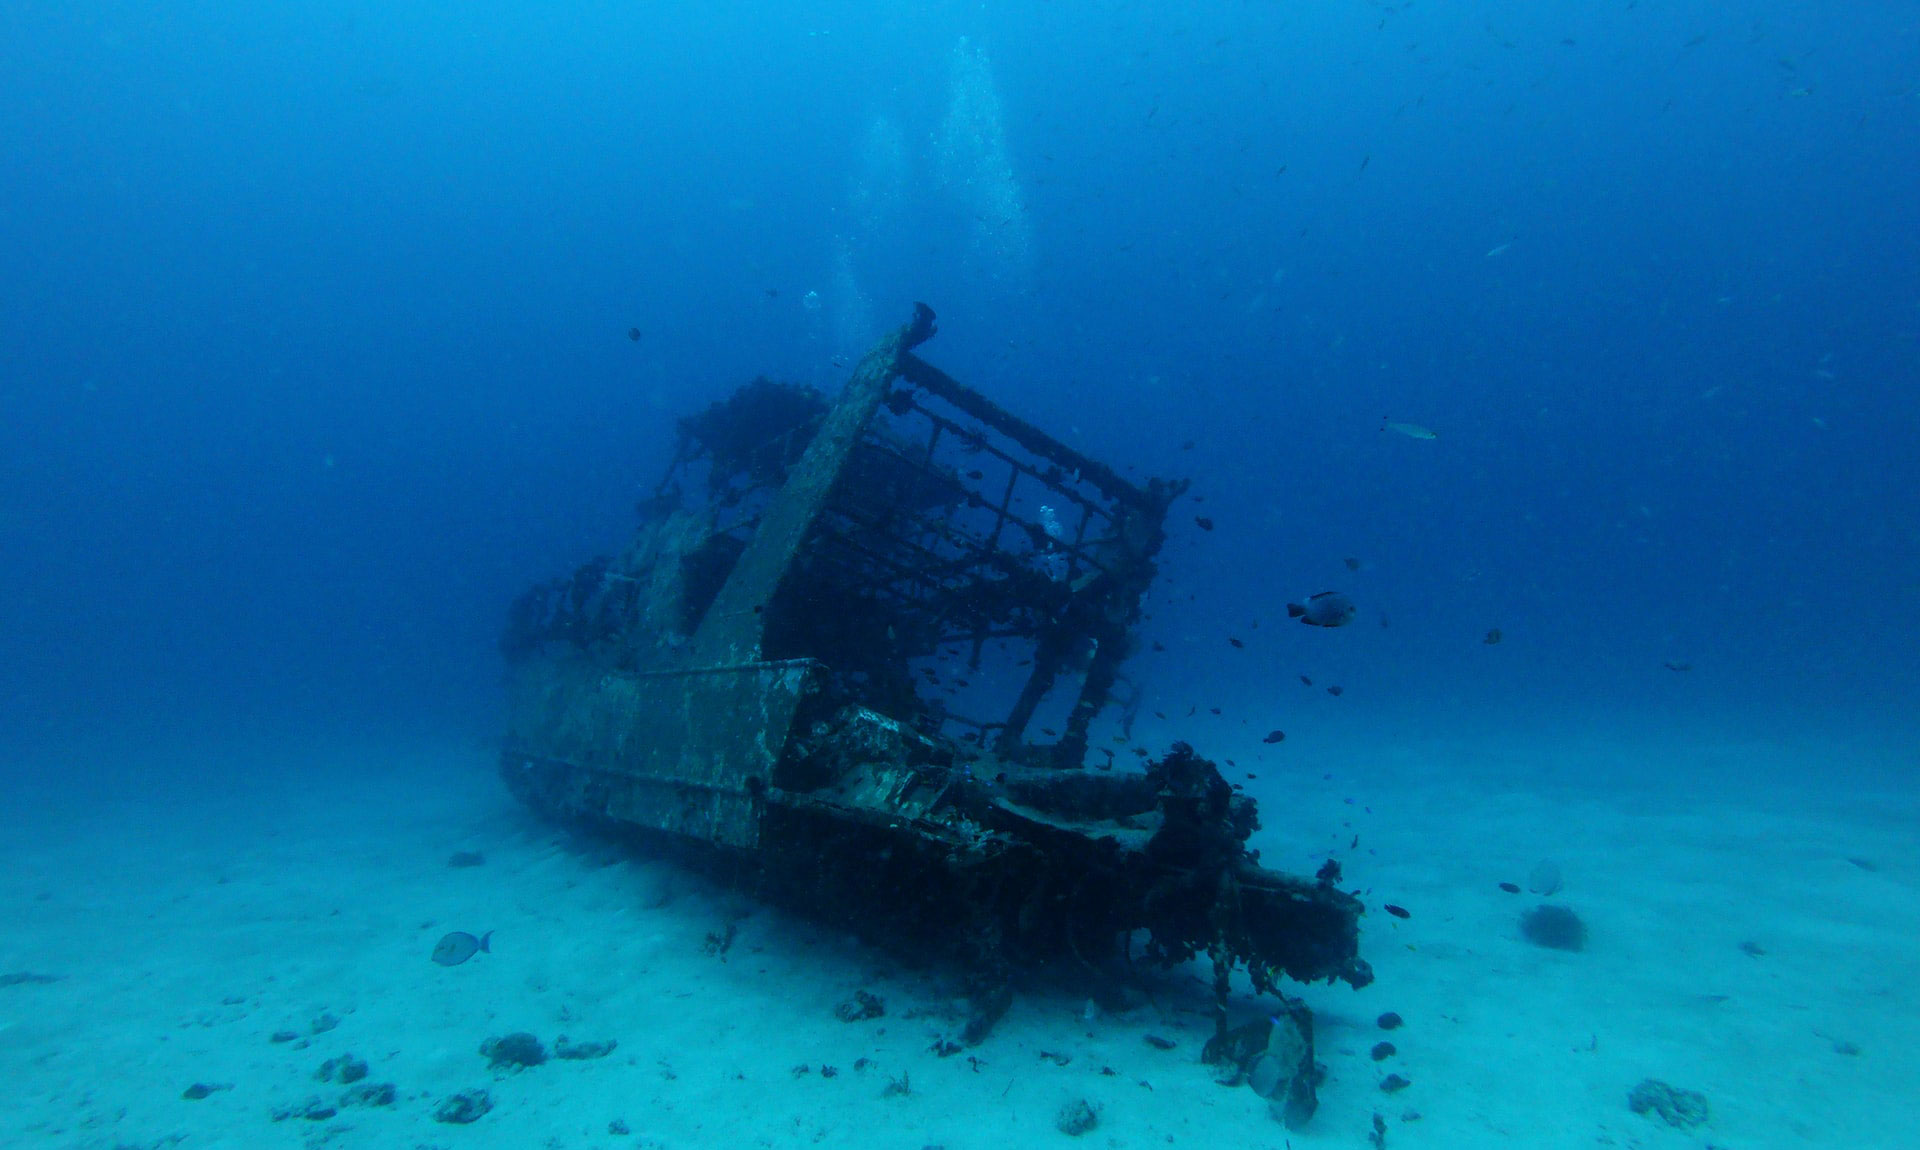 沈没船の深海捜索を行う飽和潜水士、年収はどのくらい?日本と海外の